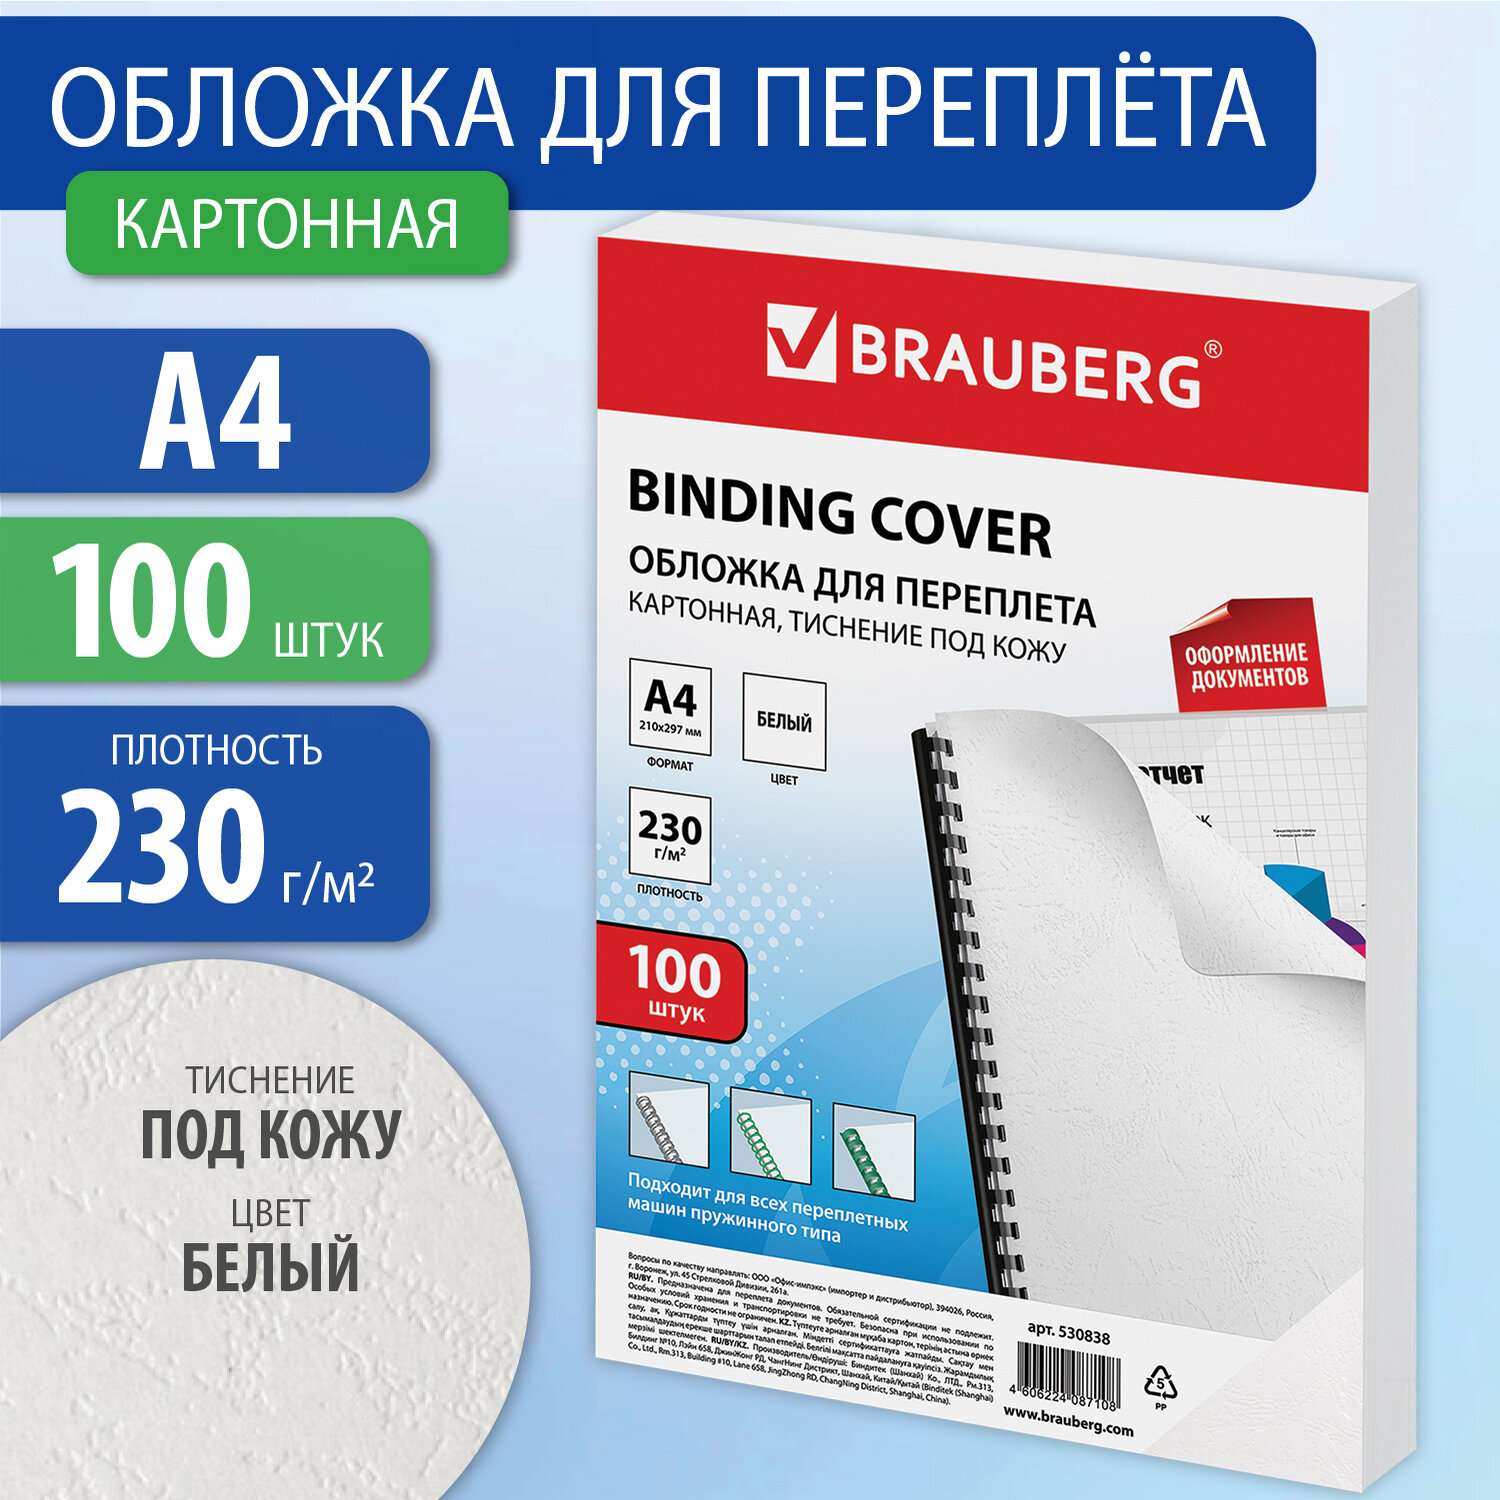 Обложки для переплета Brauberg картонные А4 набор 100 штук тиснение под кожу белые - фото 1